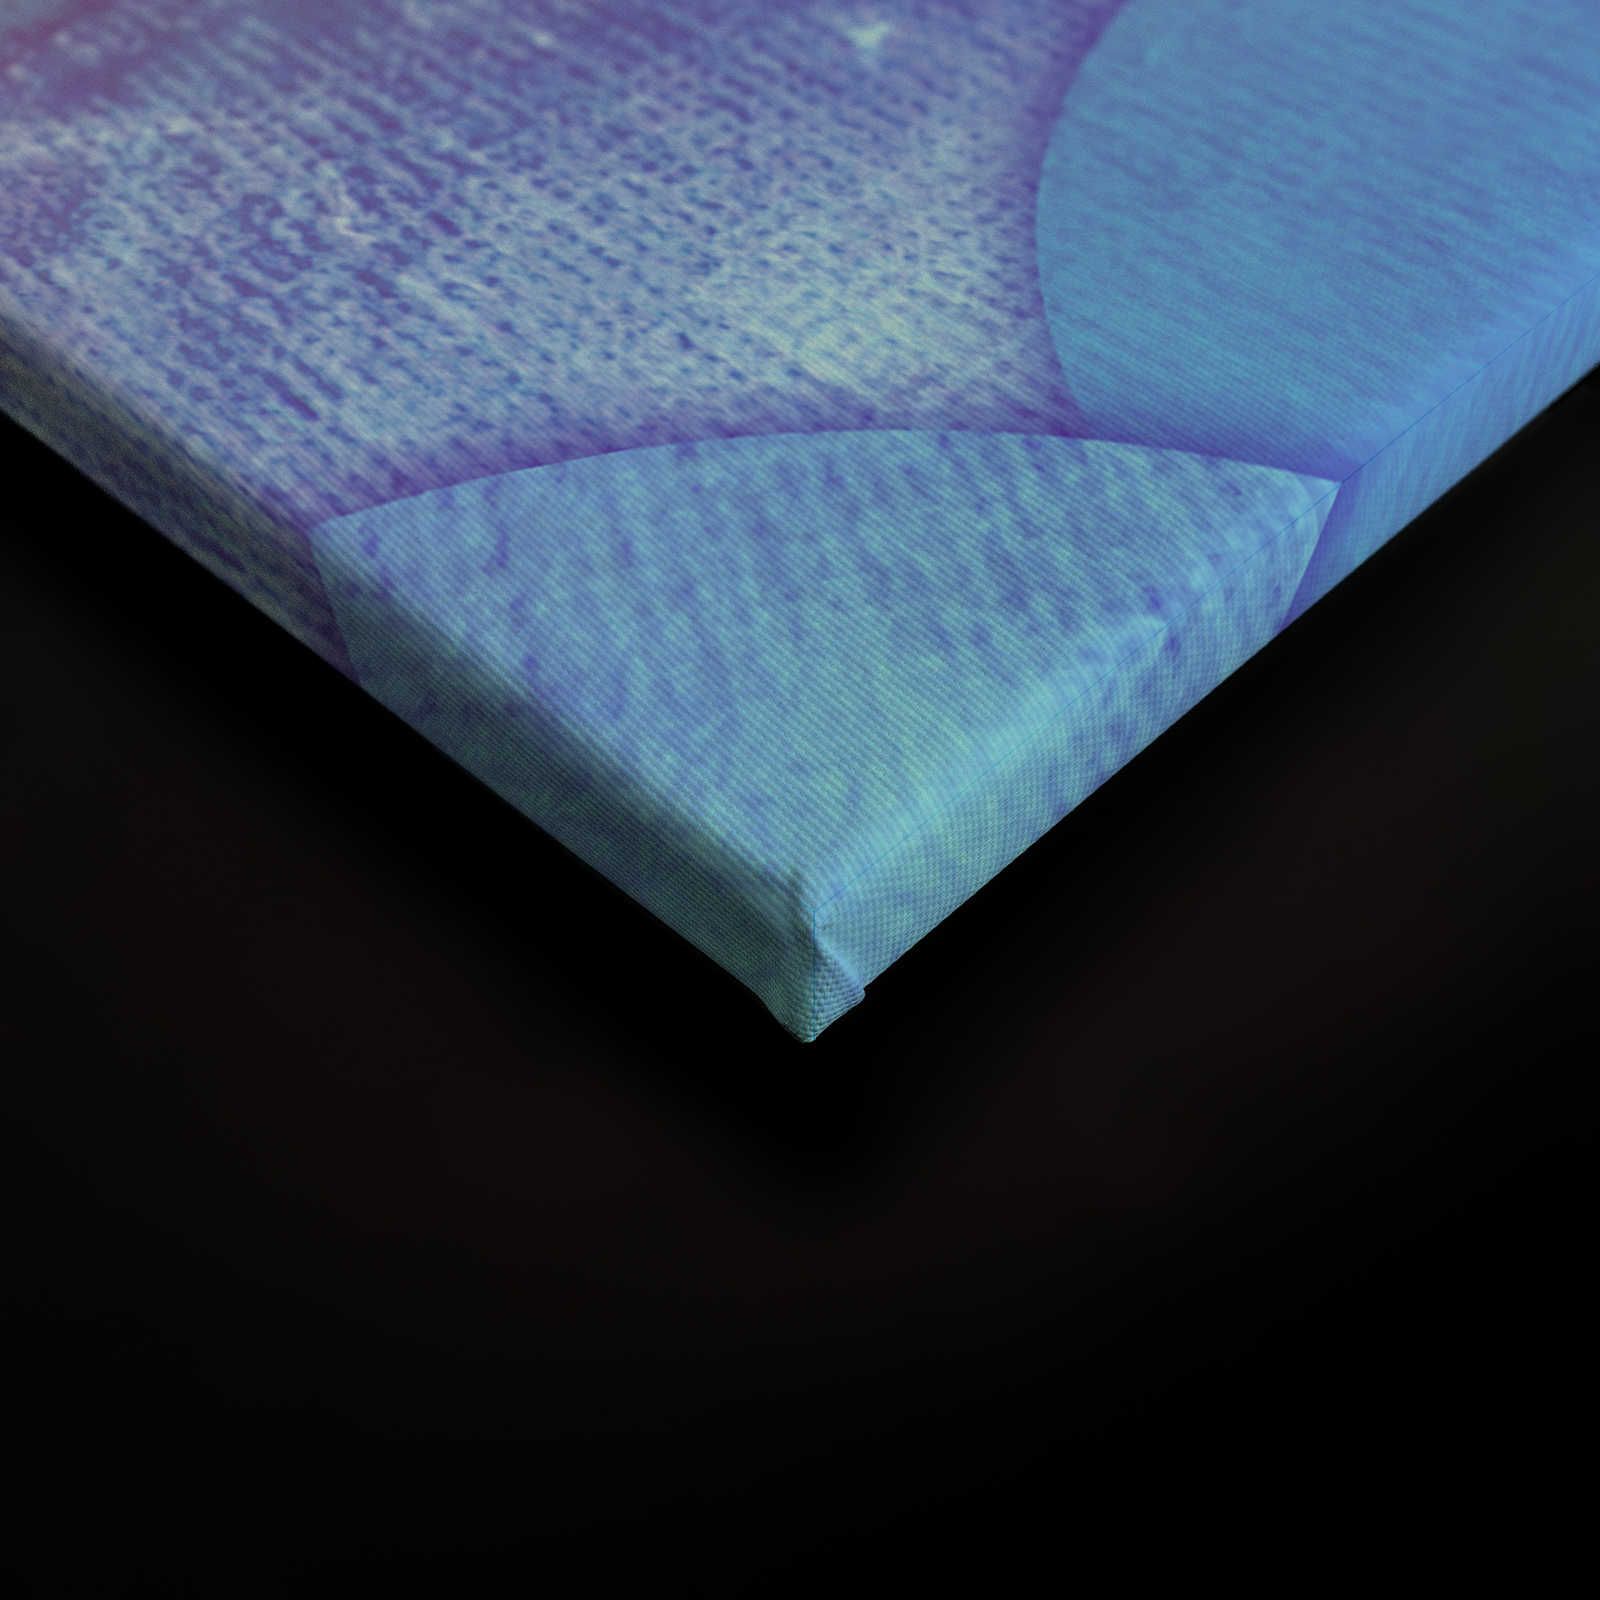             Leinwand mit Muster in Fischschuppen-Optik – 120 cm x 80 cm
        